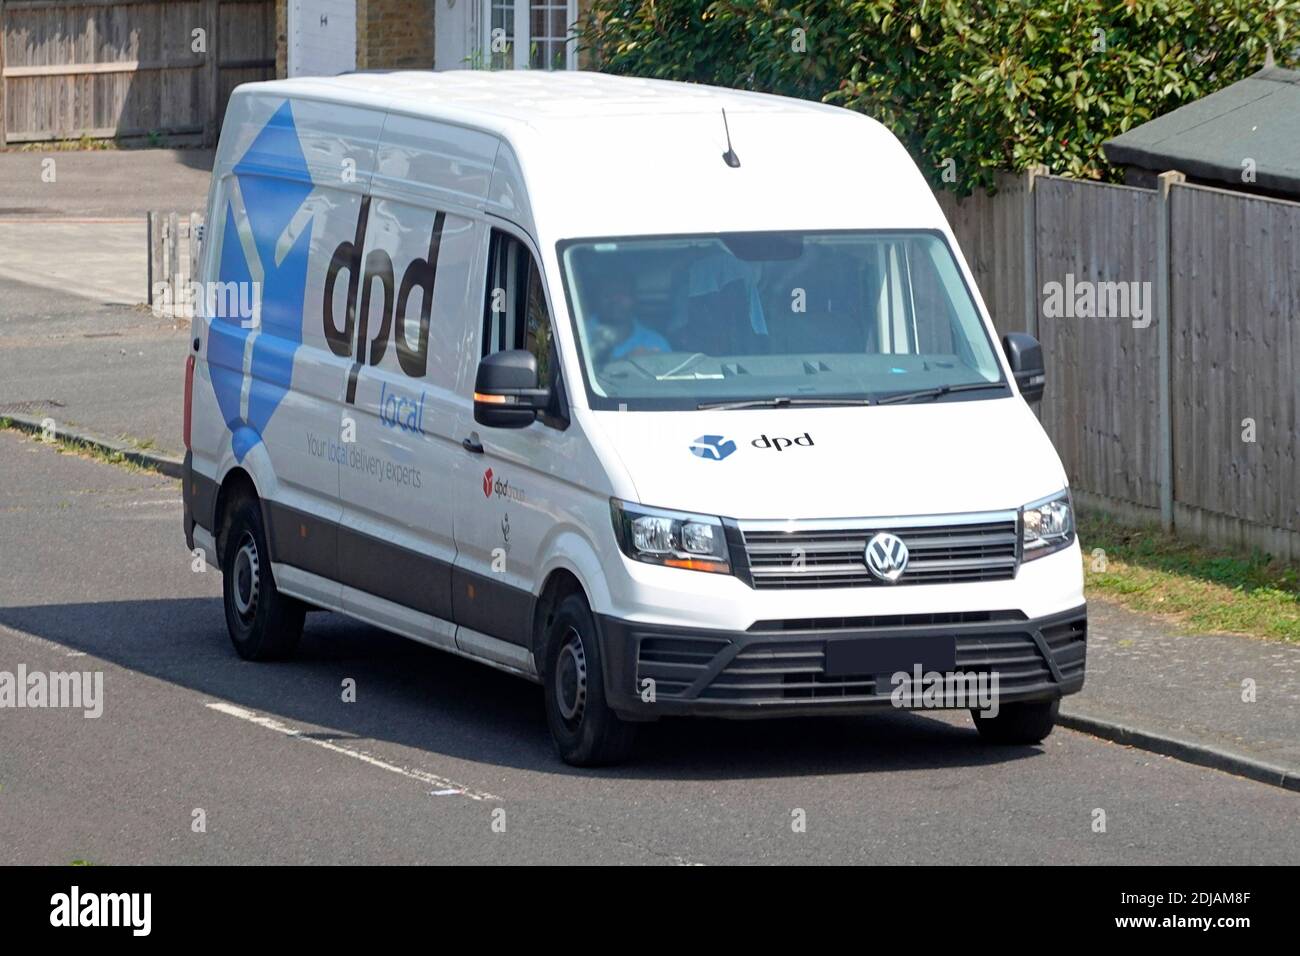 Logo de la marque commerciale sur le côté et à l'avant de VW dpd transport de minibus de livraison de la chaîne d'approvisionnement de colis locale bleue & Chauffeur dans la rue résidentielle Angleterre Royaume-Uni Banque D'Images